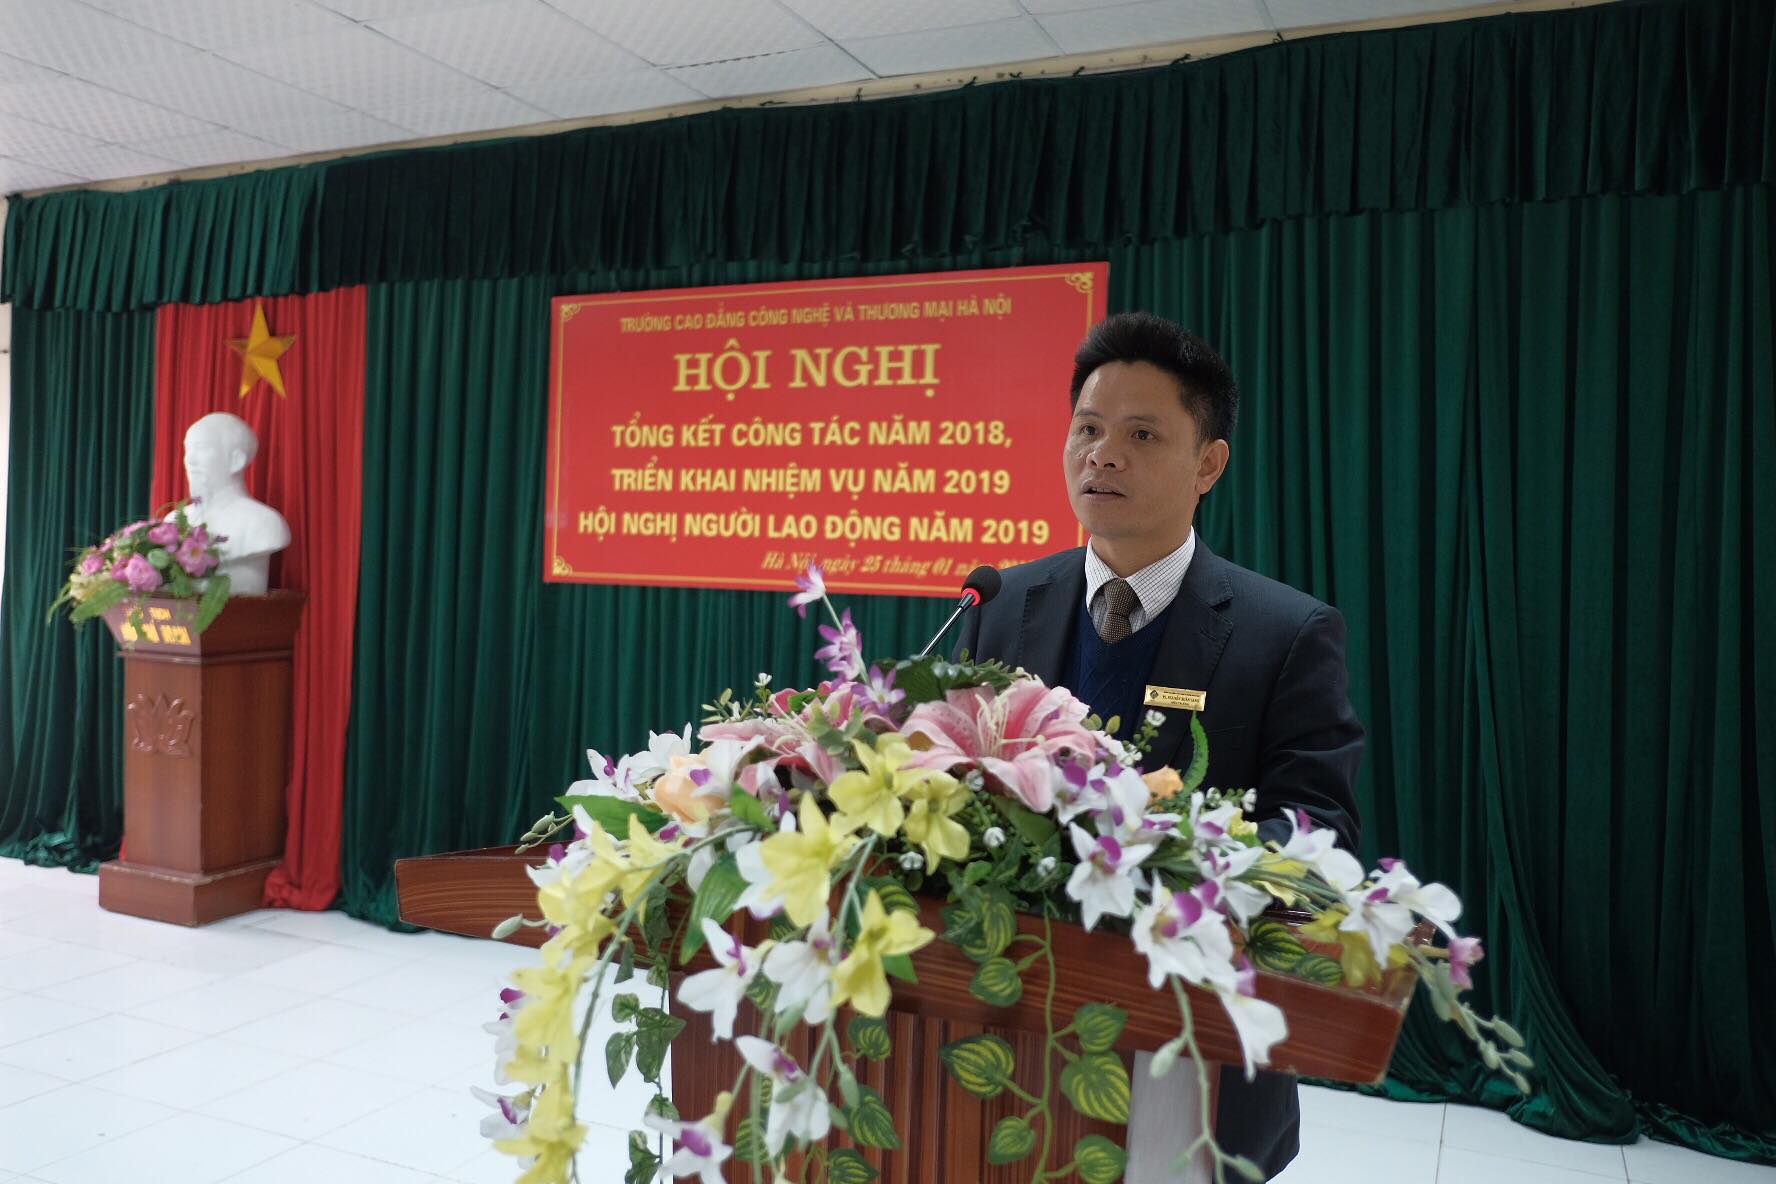 TS. Nguyễn Xuân Sang - Hiệu trưởng Nhà trường trình bày báo cáo tổng kết công tác năm 2018 và triển khai phương hướng, nhiệm vụ công tác năm 2019